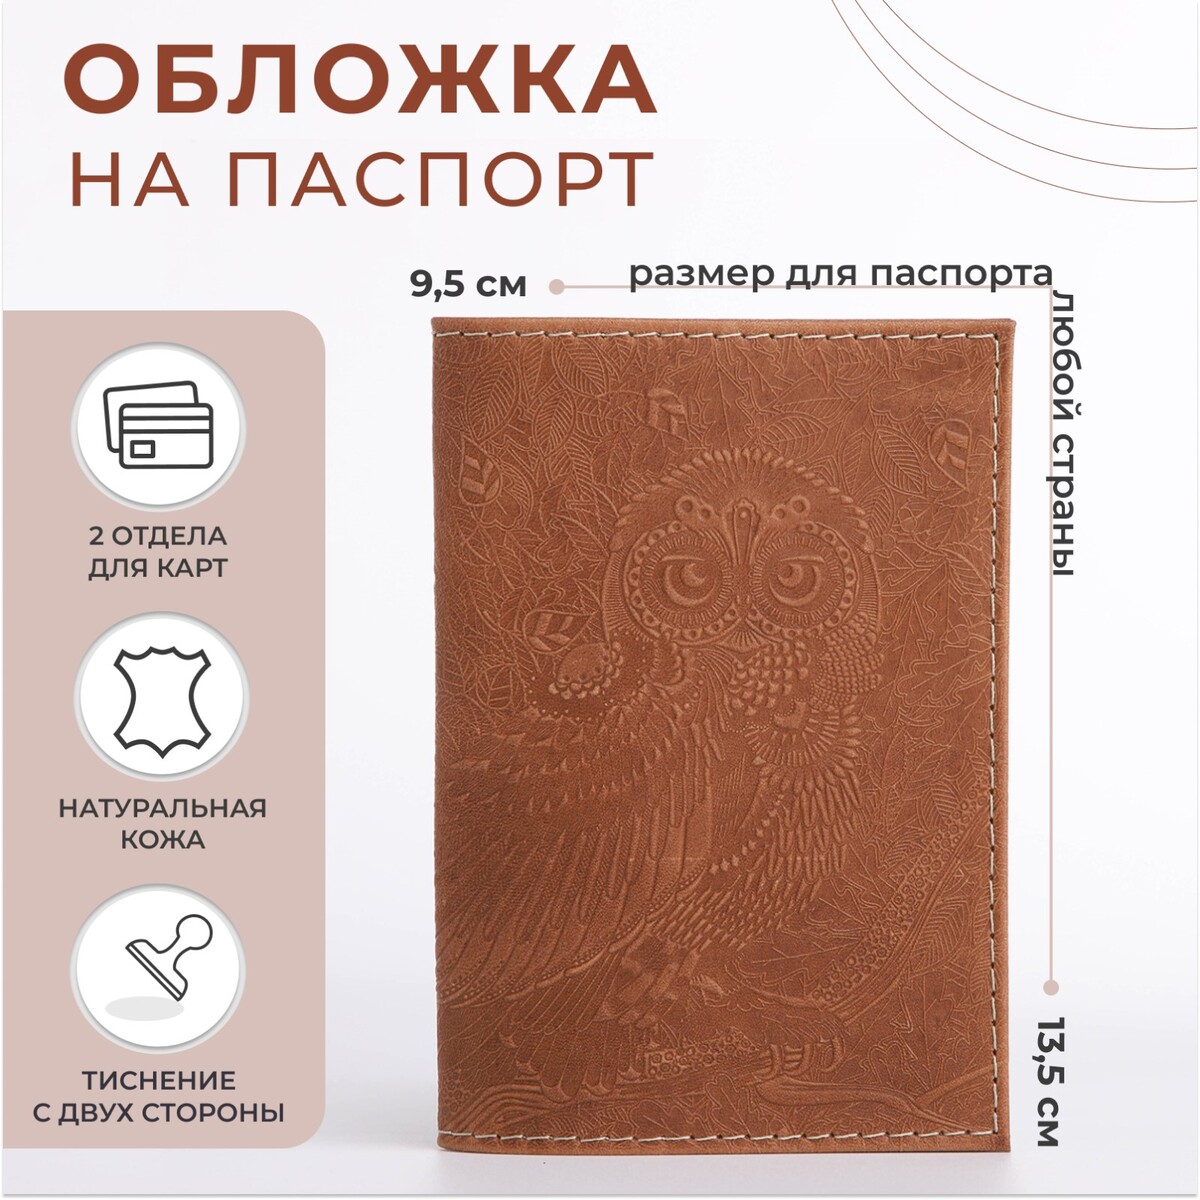 Обложка для паспорта, цвет темно-бежевый обложка для паспорта тиснение